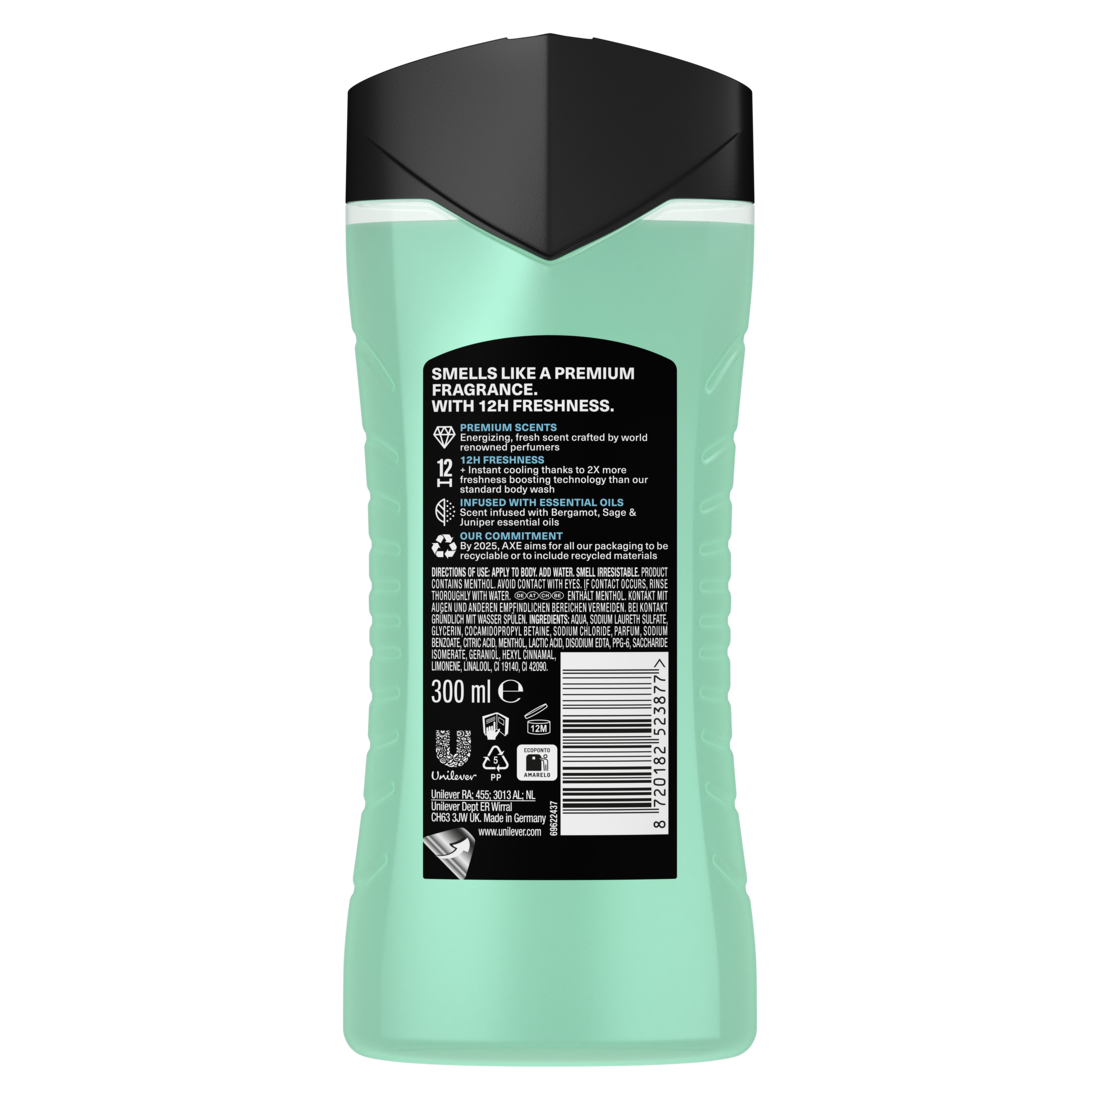 Fine Fragrance Collection Duschgel Aqua Bergamot Bodywash für 12 Stunden langanhaltende Frische mit 2x mehr Frische-Booster 300 ml